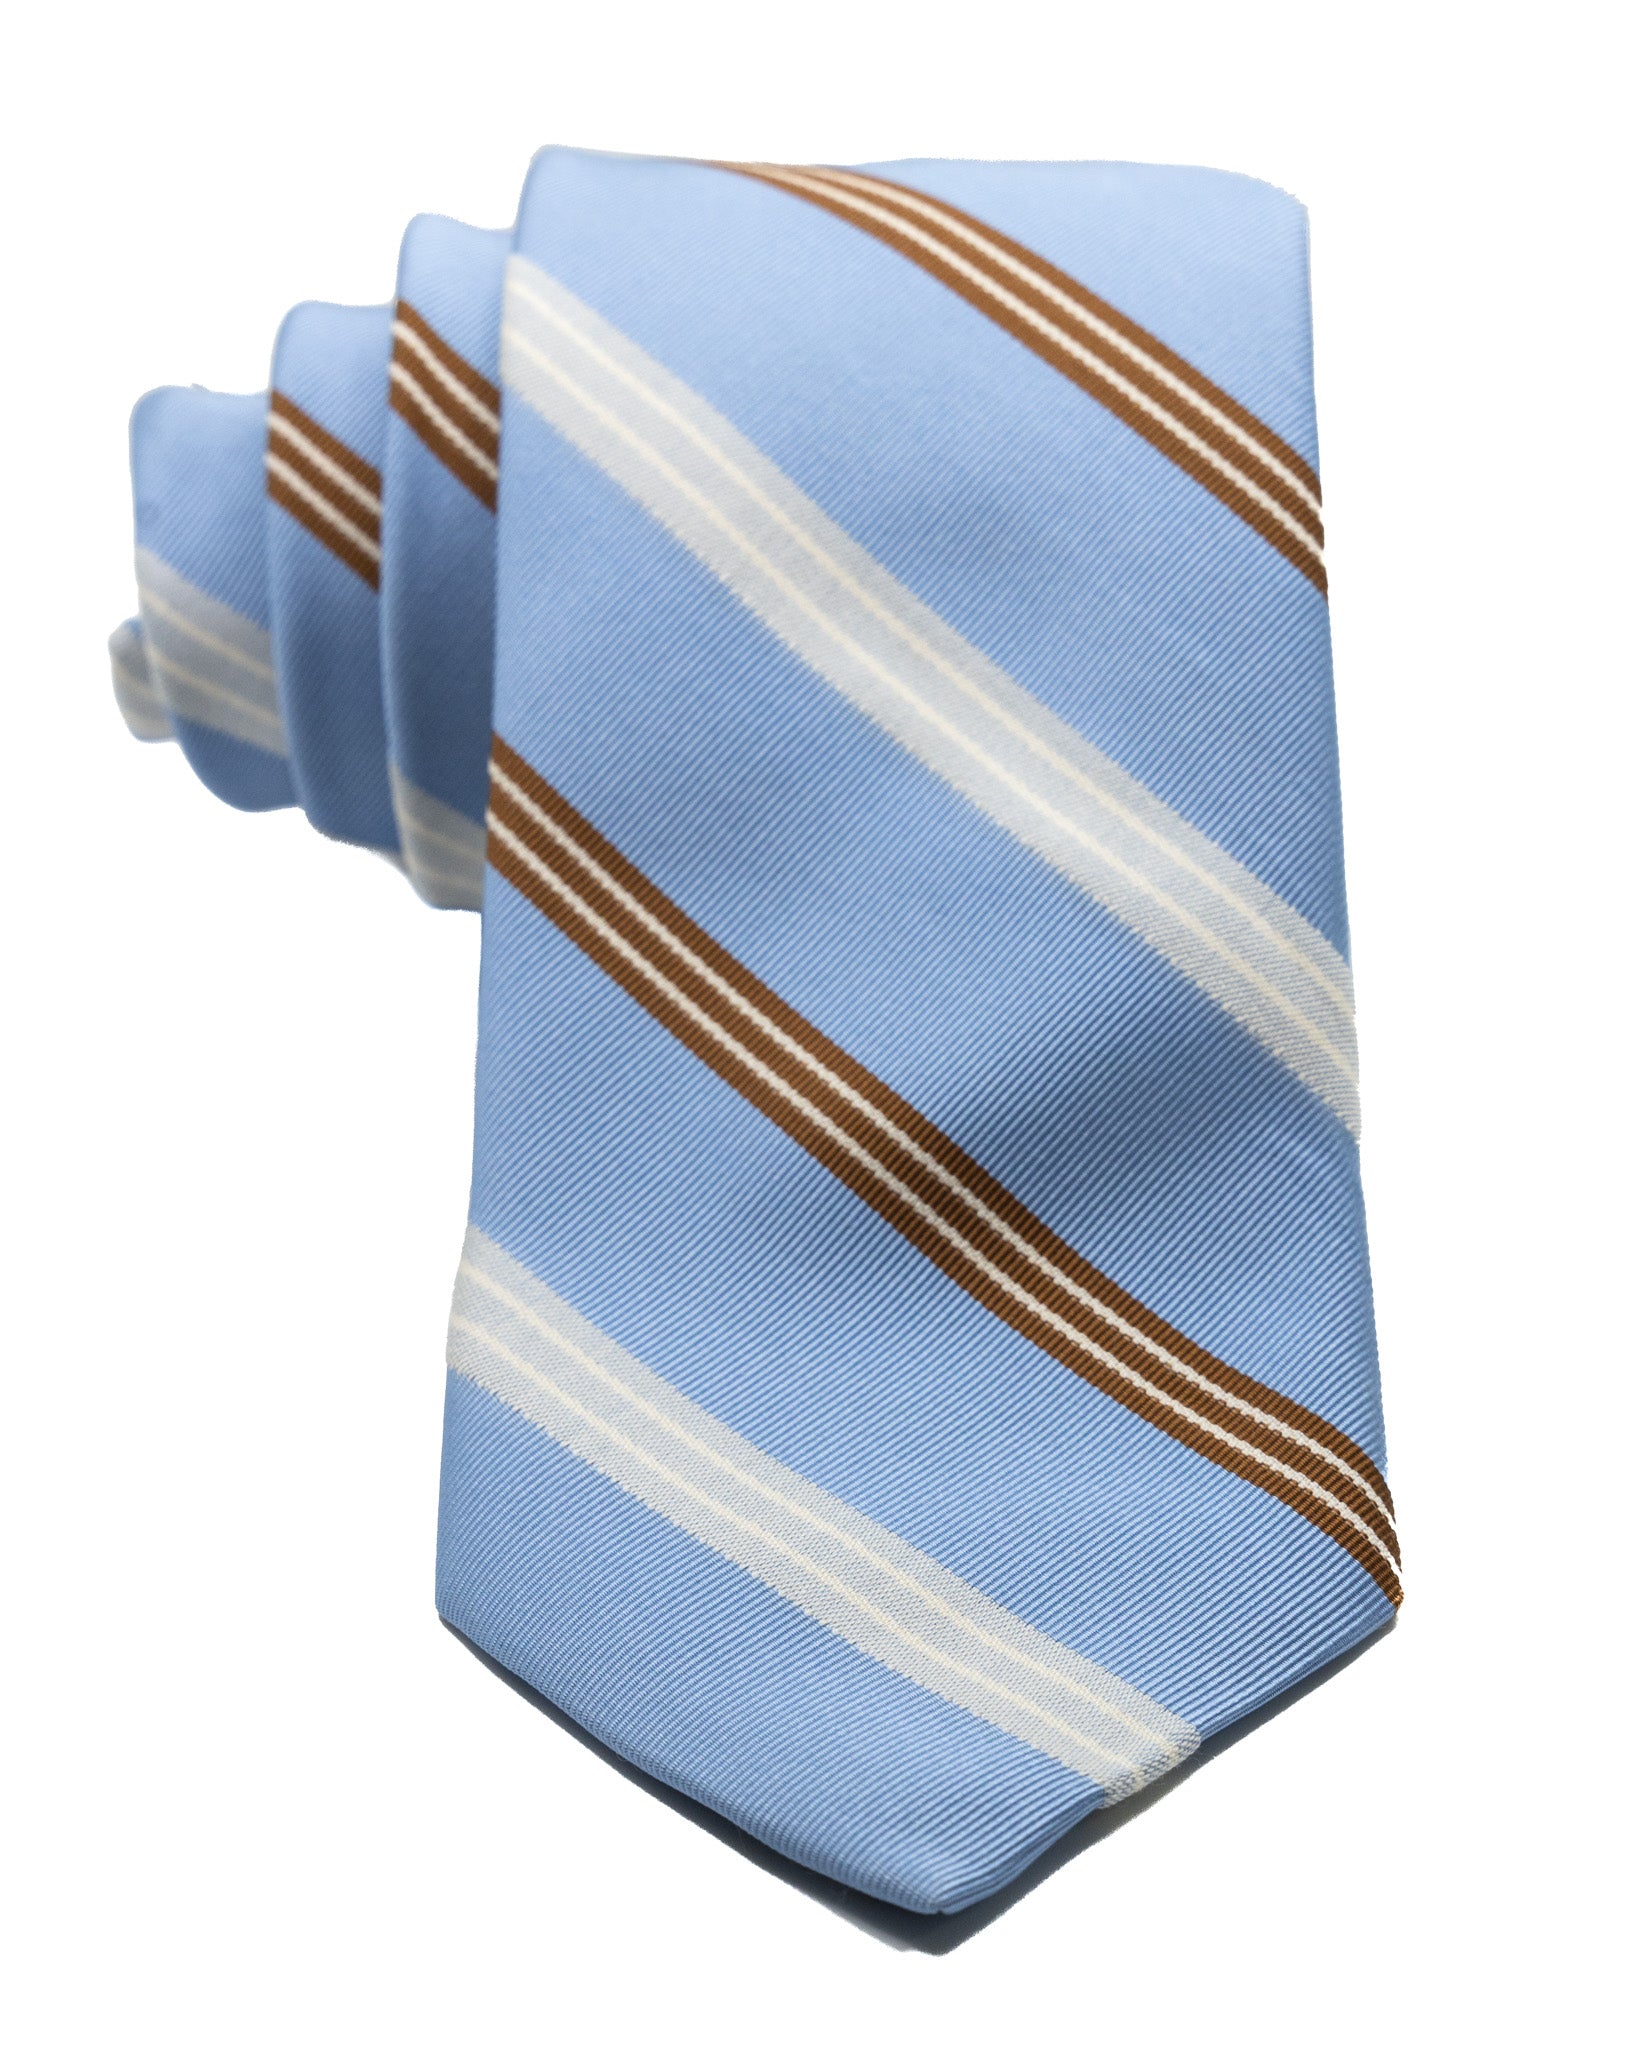 Cravatta - in seta azzurra con righe